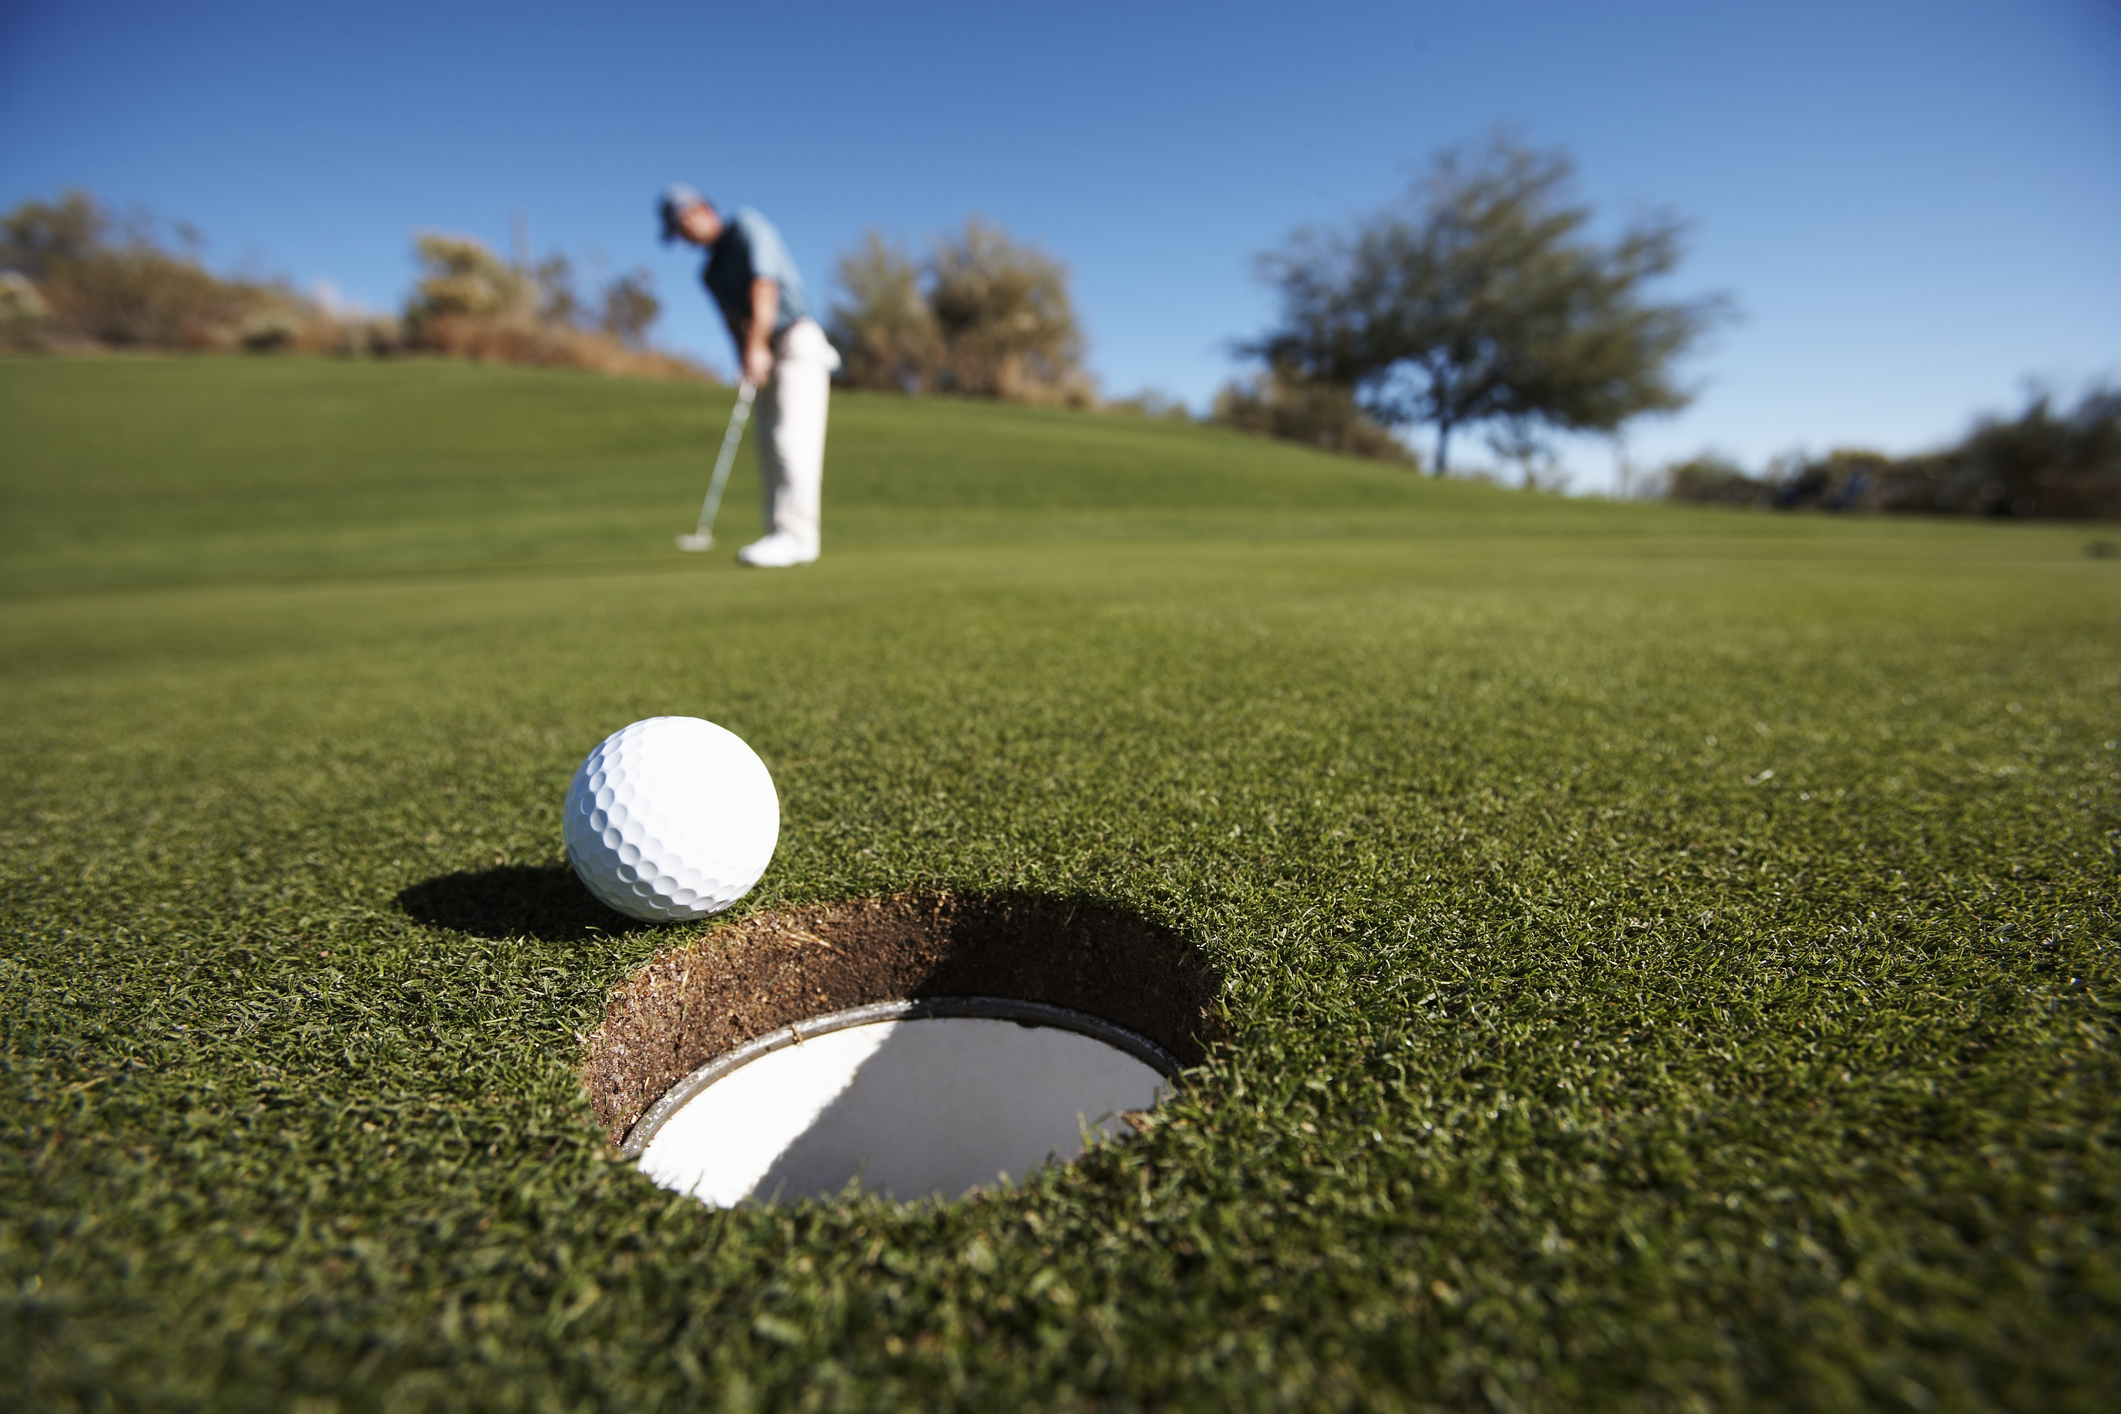 Golf ball on the green grass field.